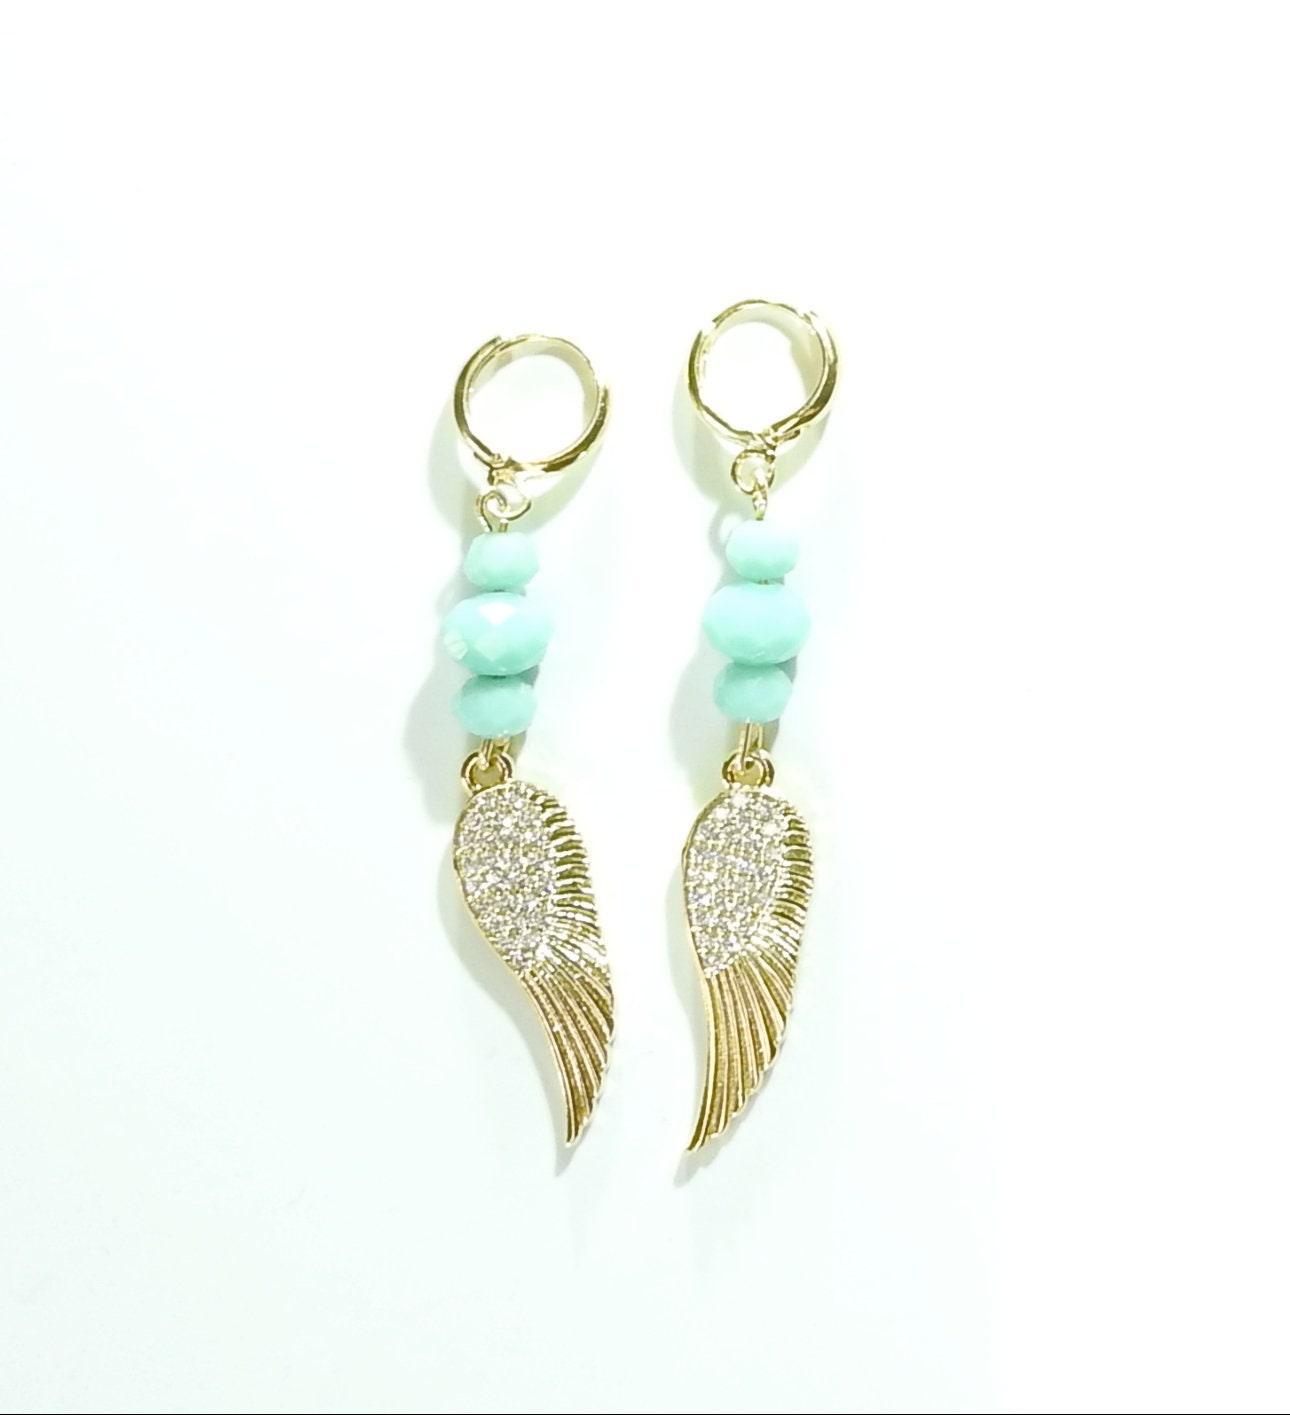 Angel wing earrings - zazaofcanada